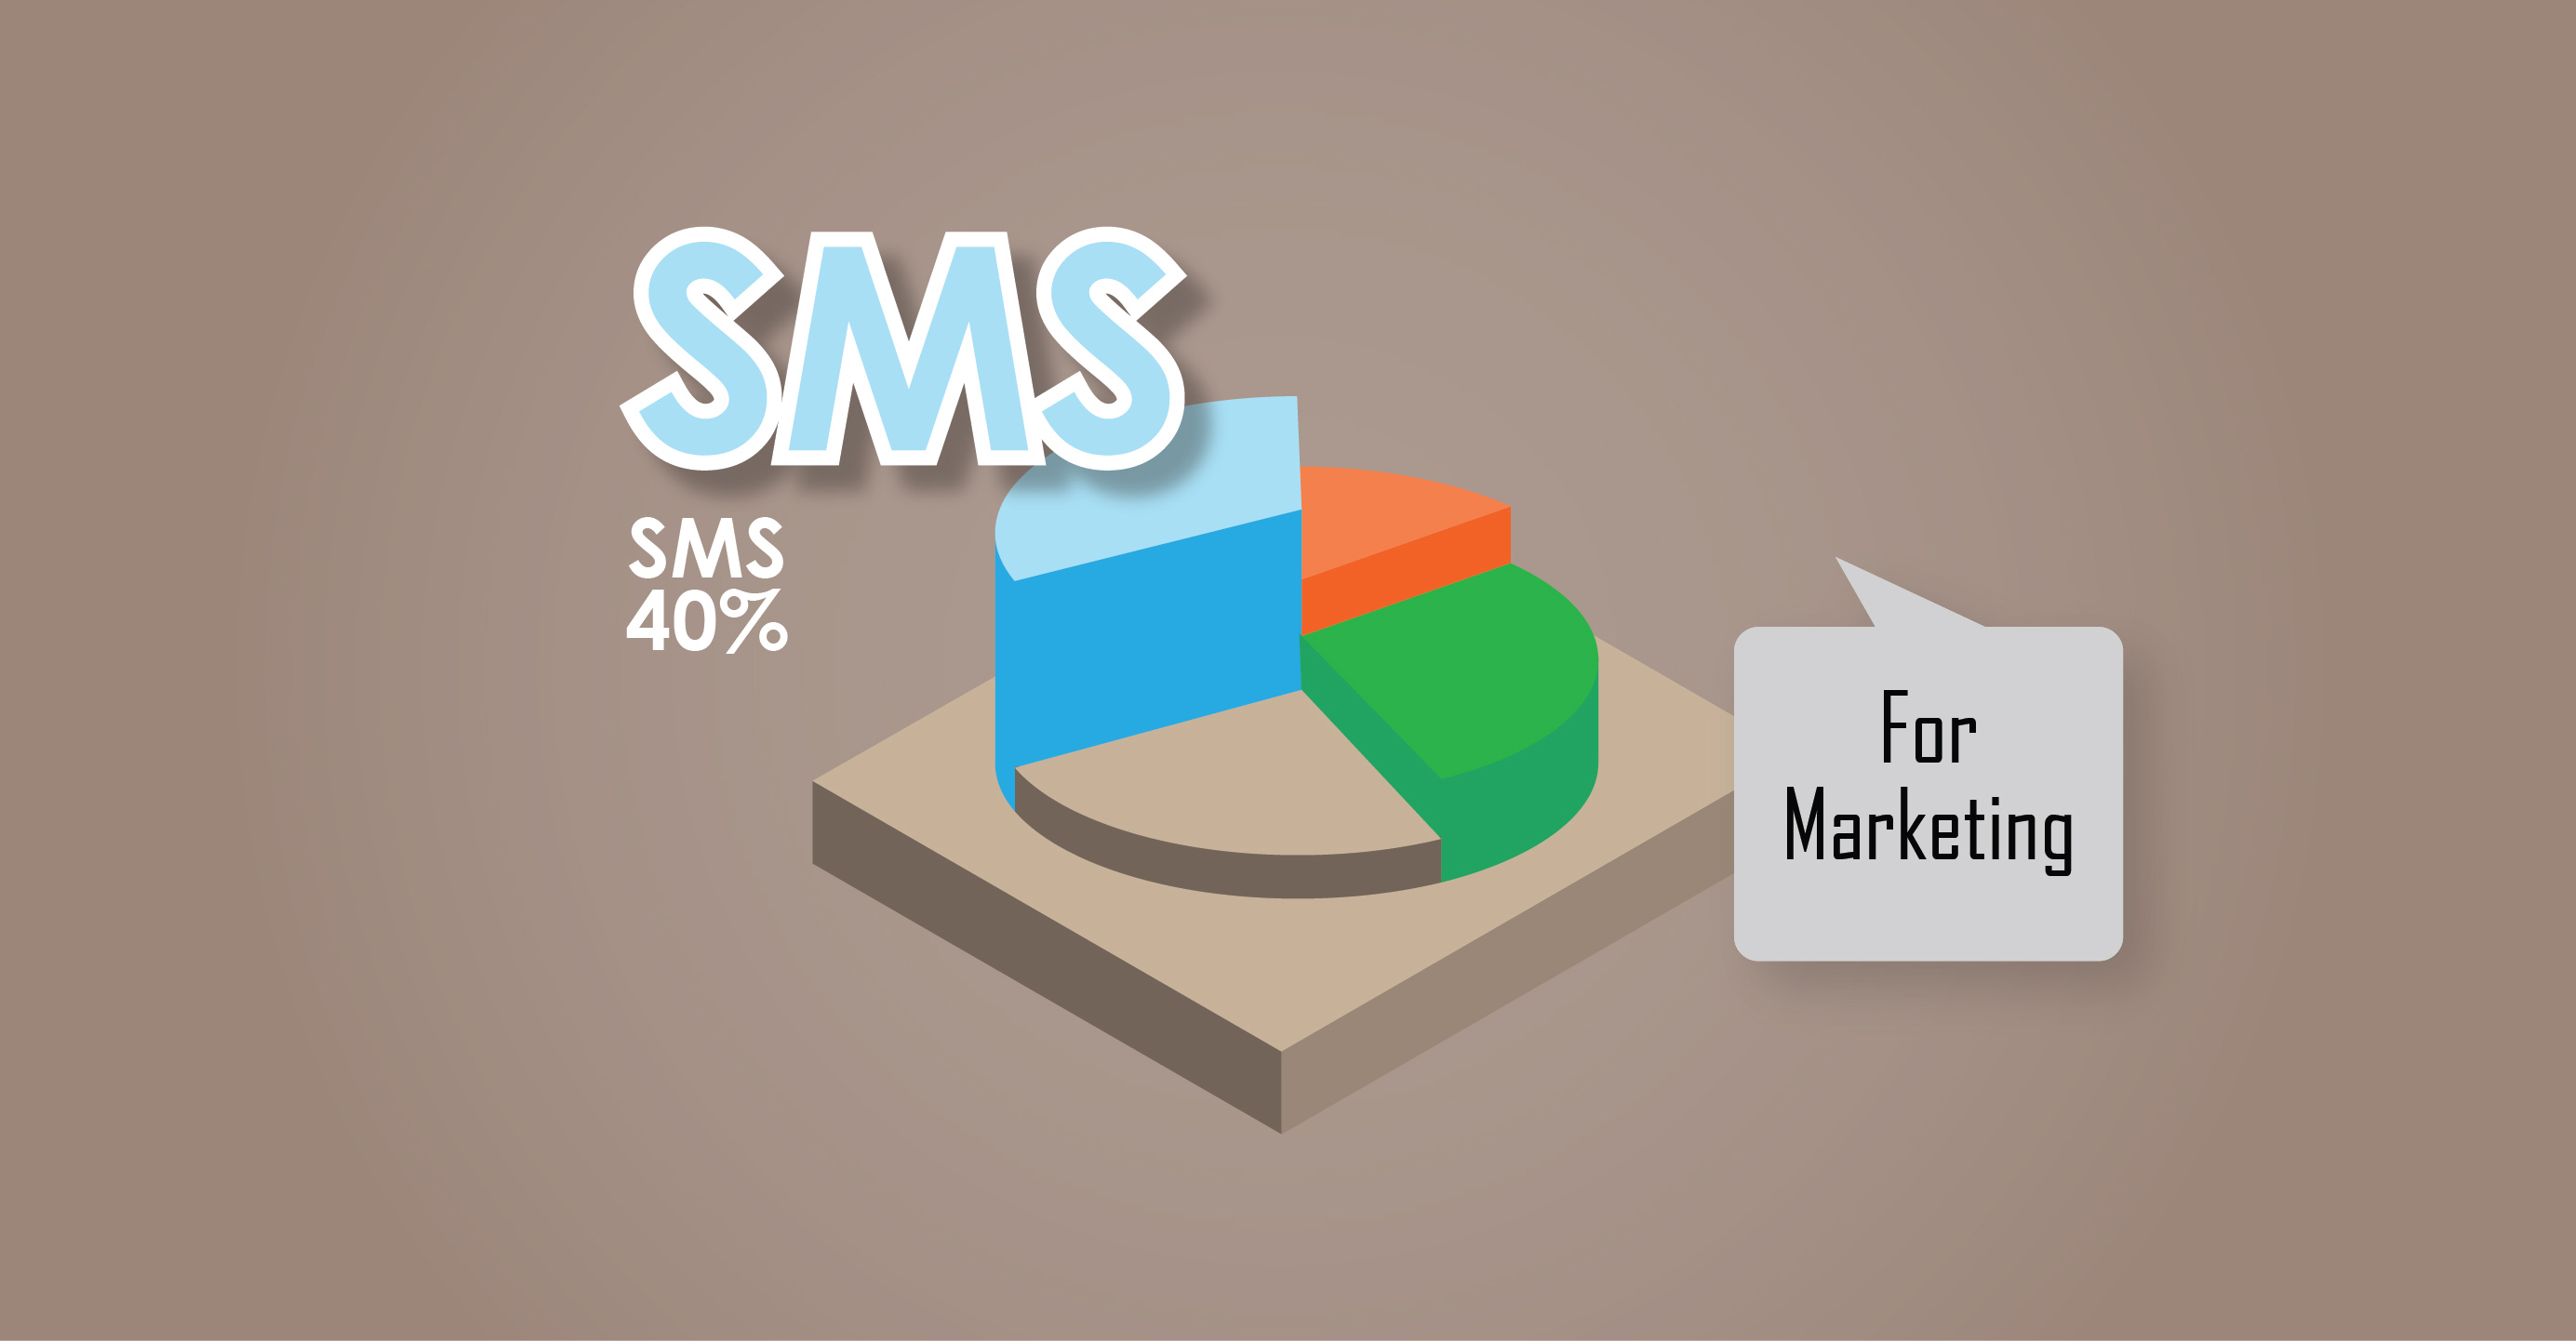 เปรียบเทียบประสิทธิภาพสื่อดิจิตอล 3 แบบ: E-mail | LINE | SMS